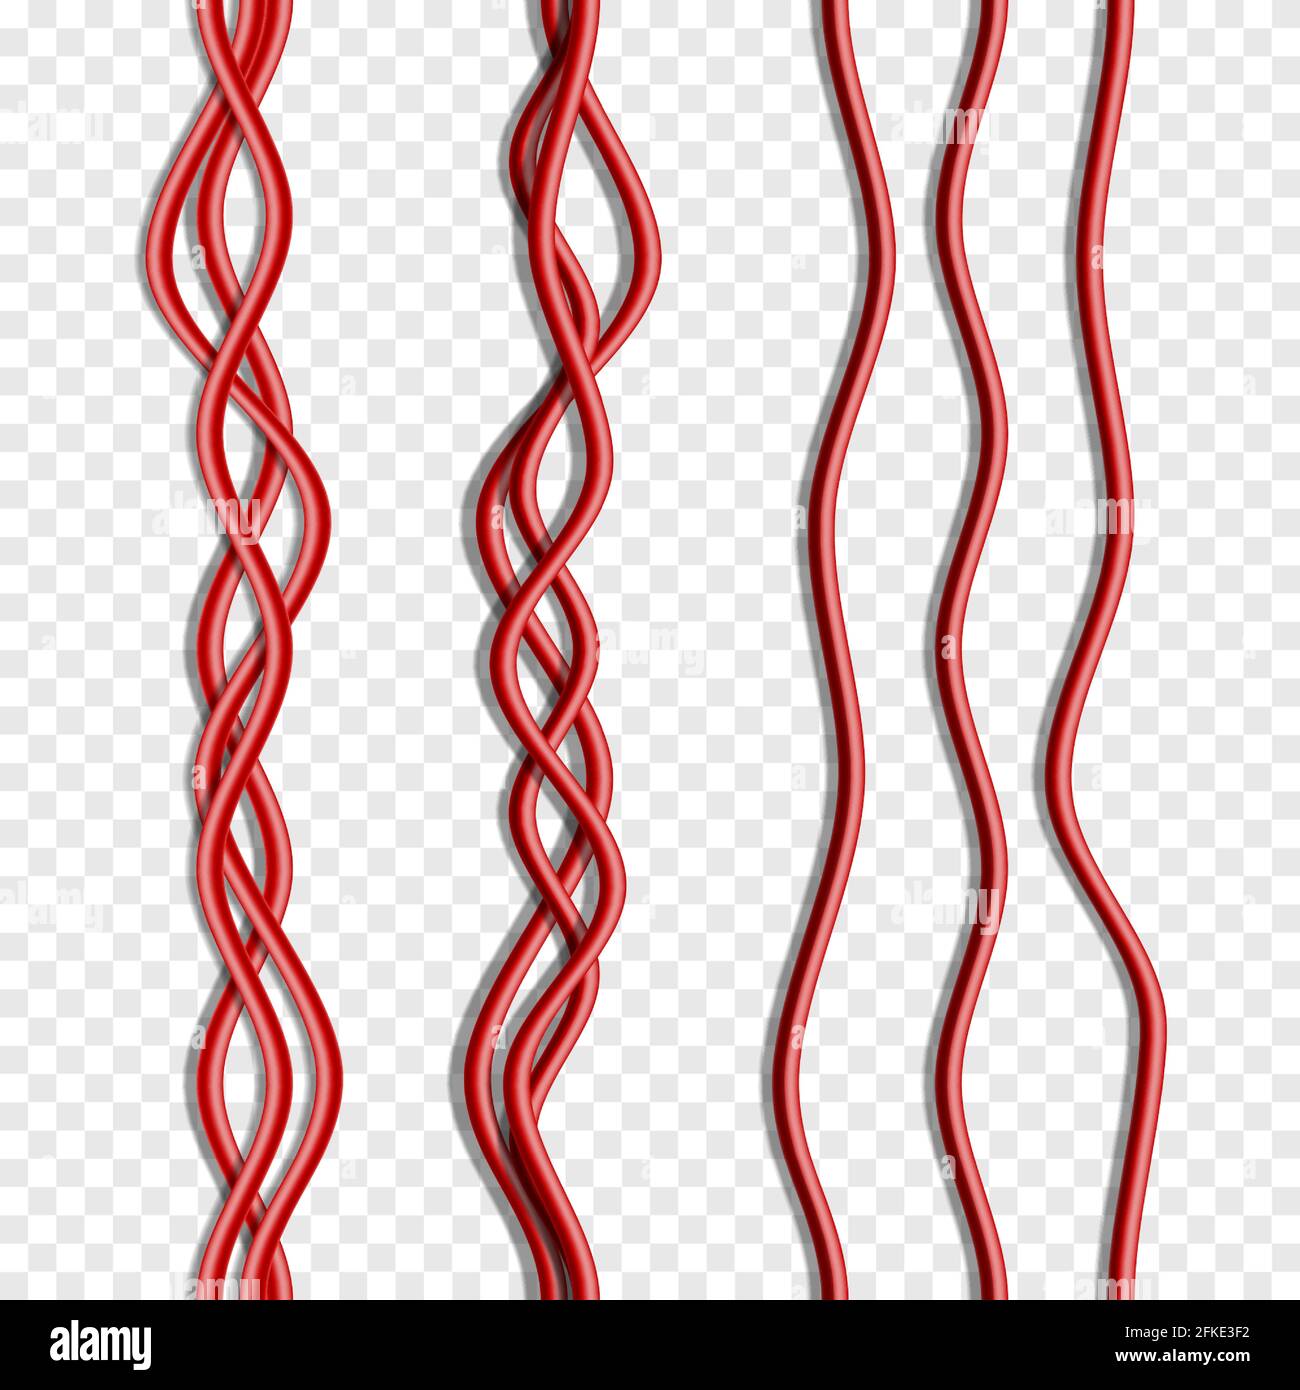 Vector realistische nahtlose rote Kabel isoliert auf weiß. Stock Vektor